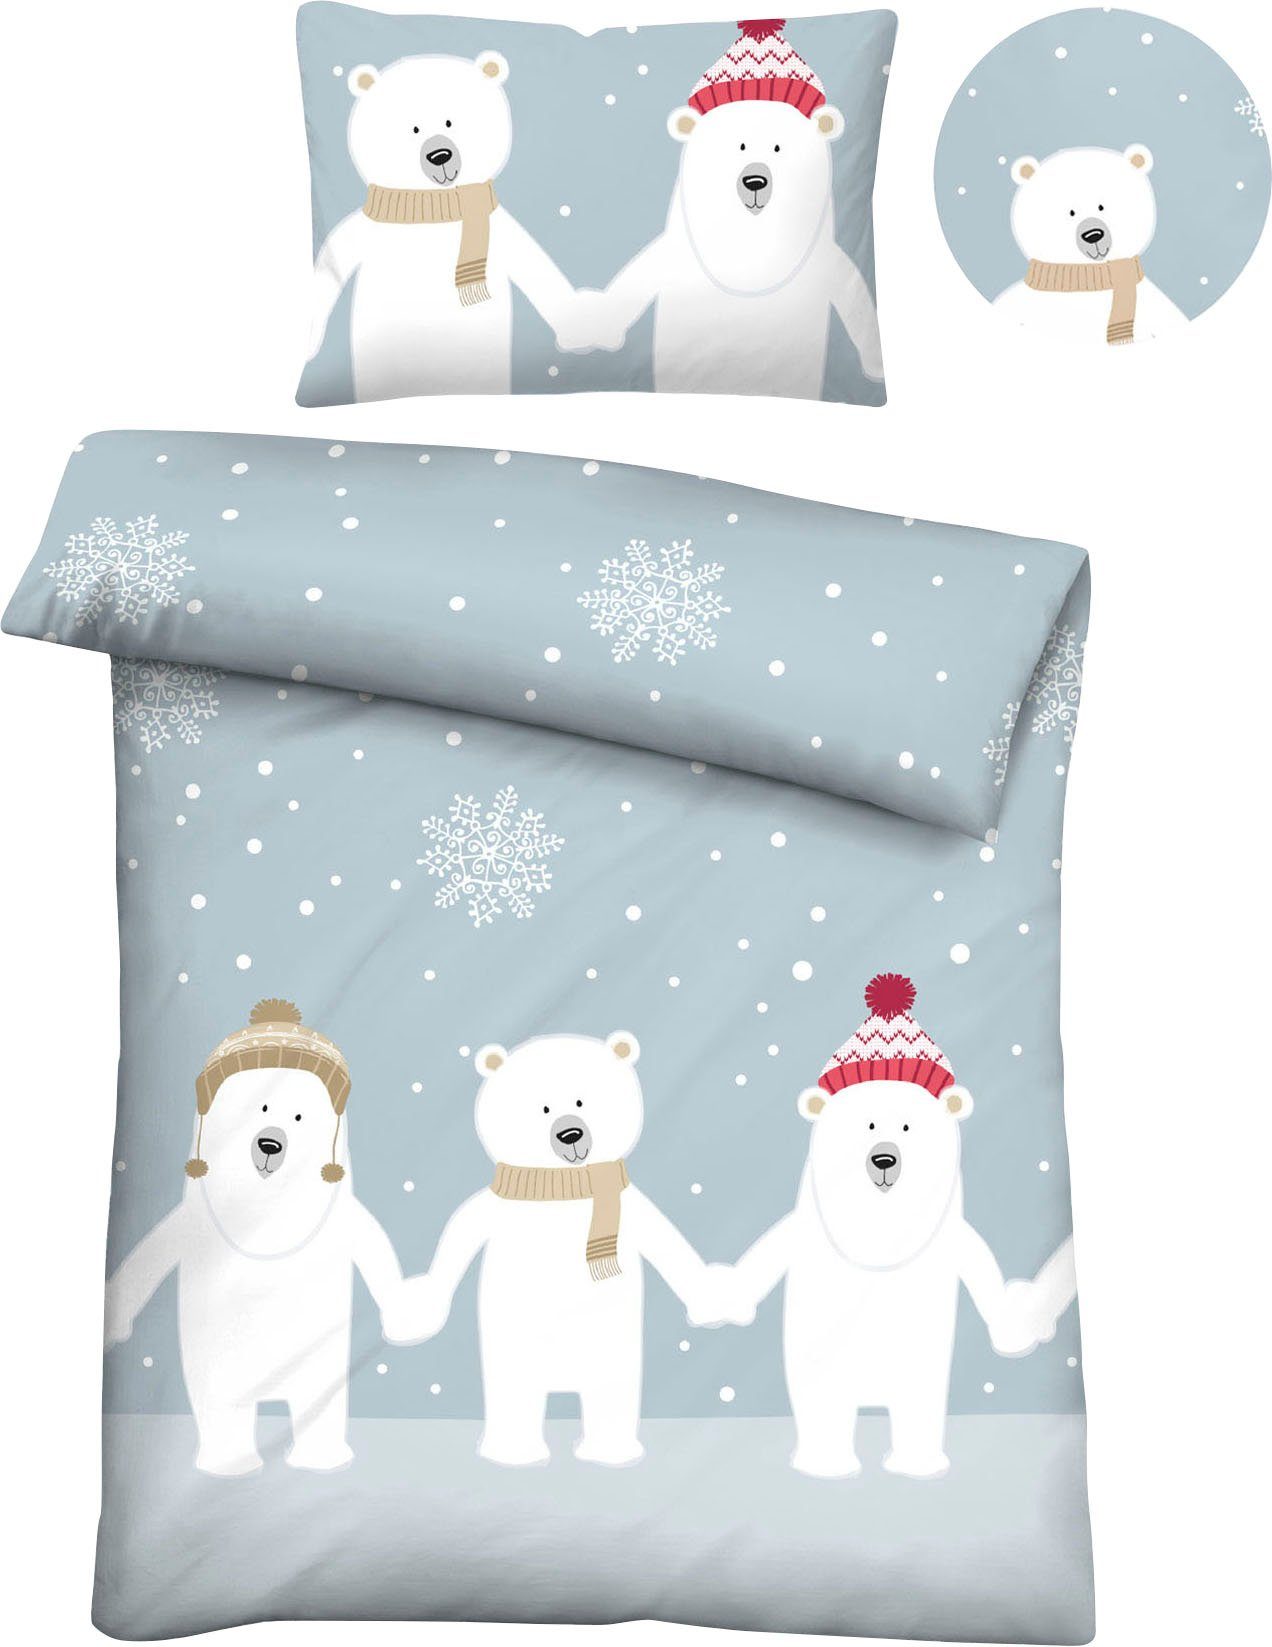 Kinderbettwäsche Eddy, Biberna, Feinbiber, 2 teilig, mit winterlichen Eisbären